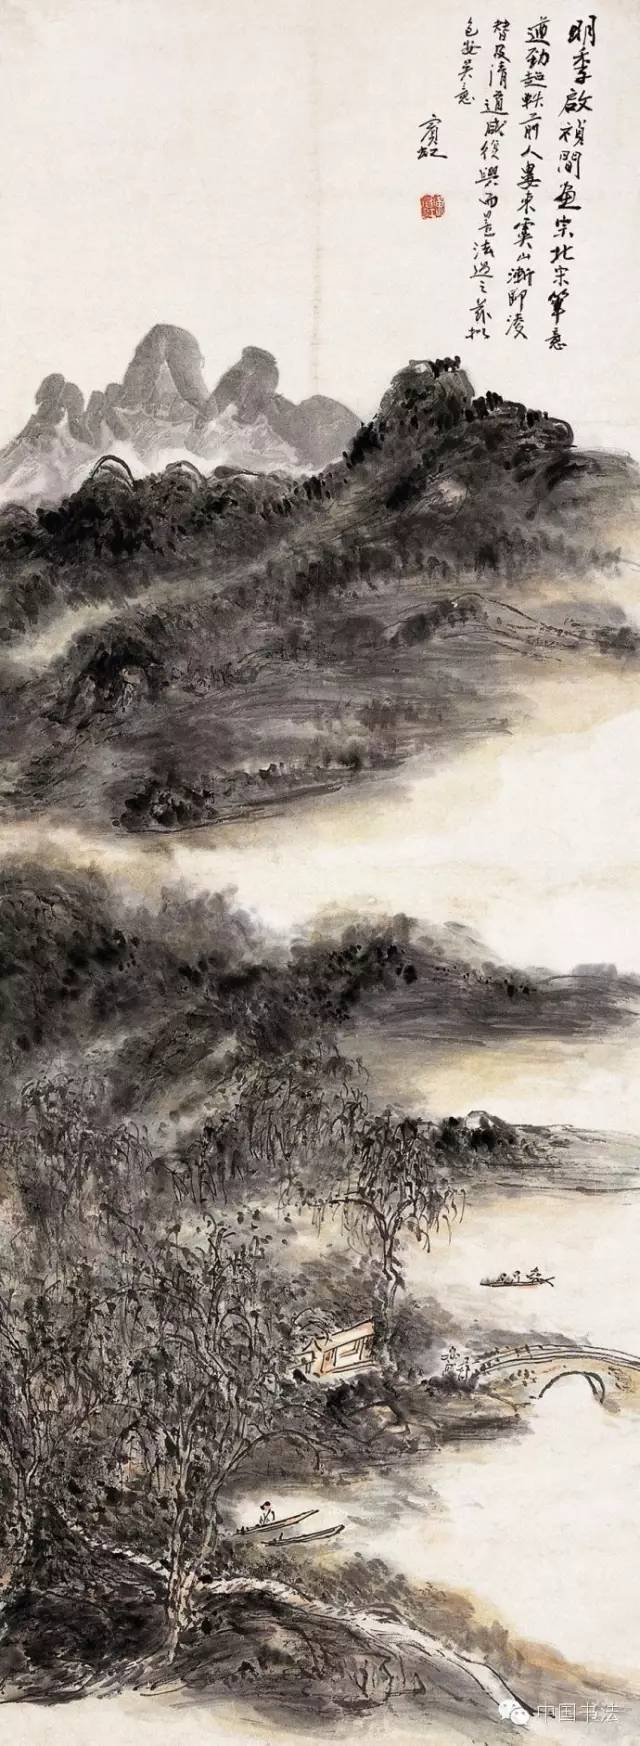 近现代百年中国画大师黄宾虹(1865-1955)70张作品欣赏